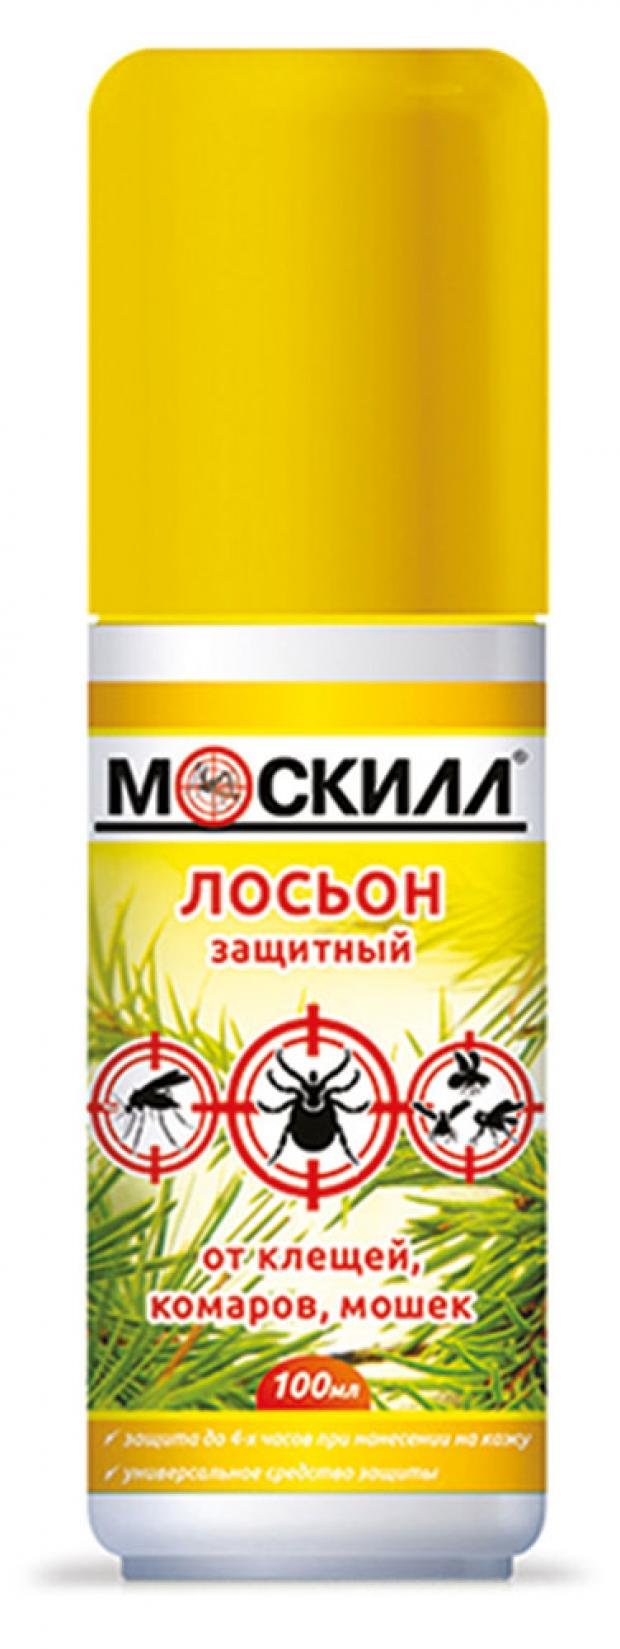 Средство от комаров клещей и мошек Москилл, 100 мл